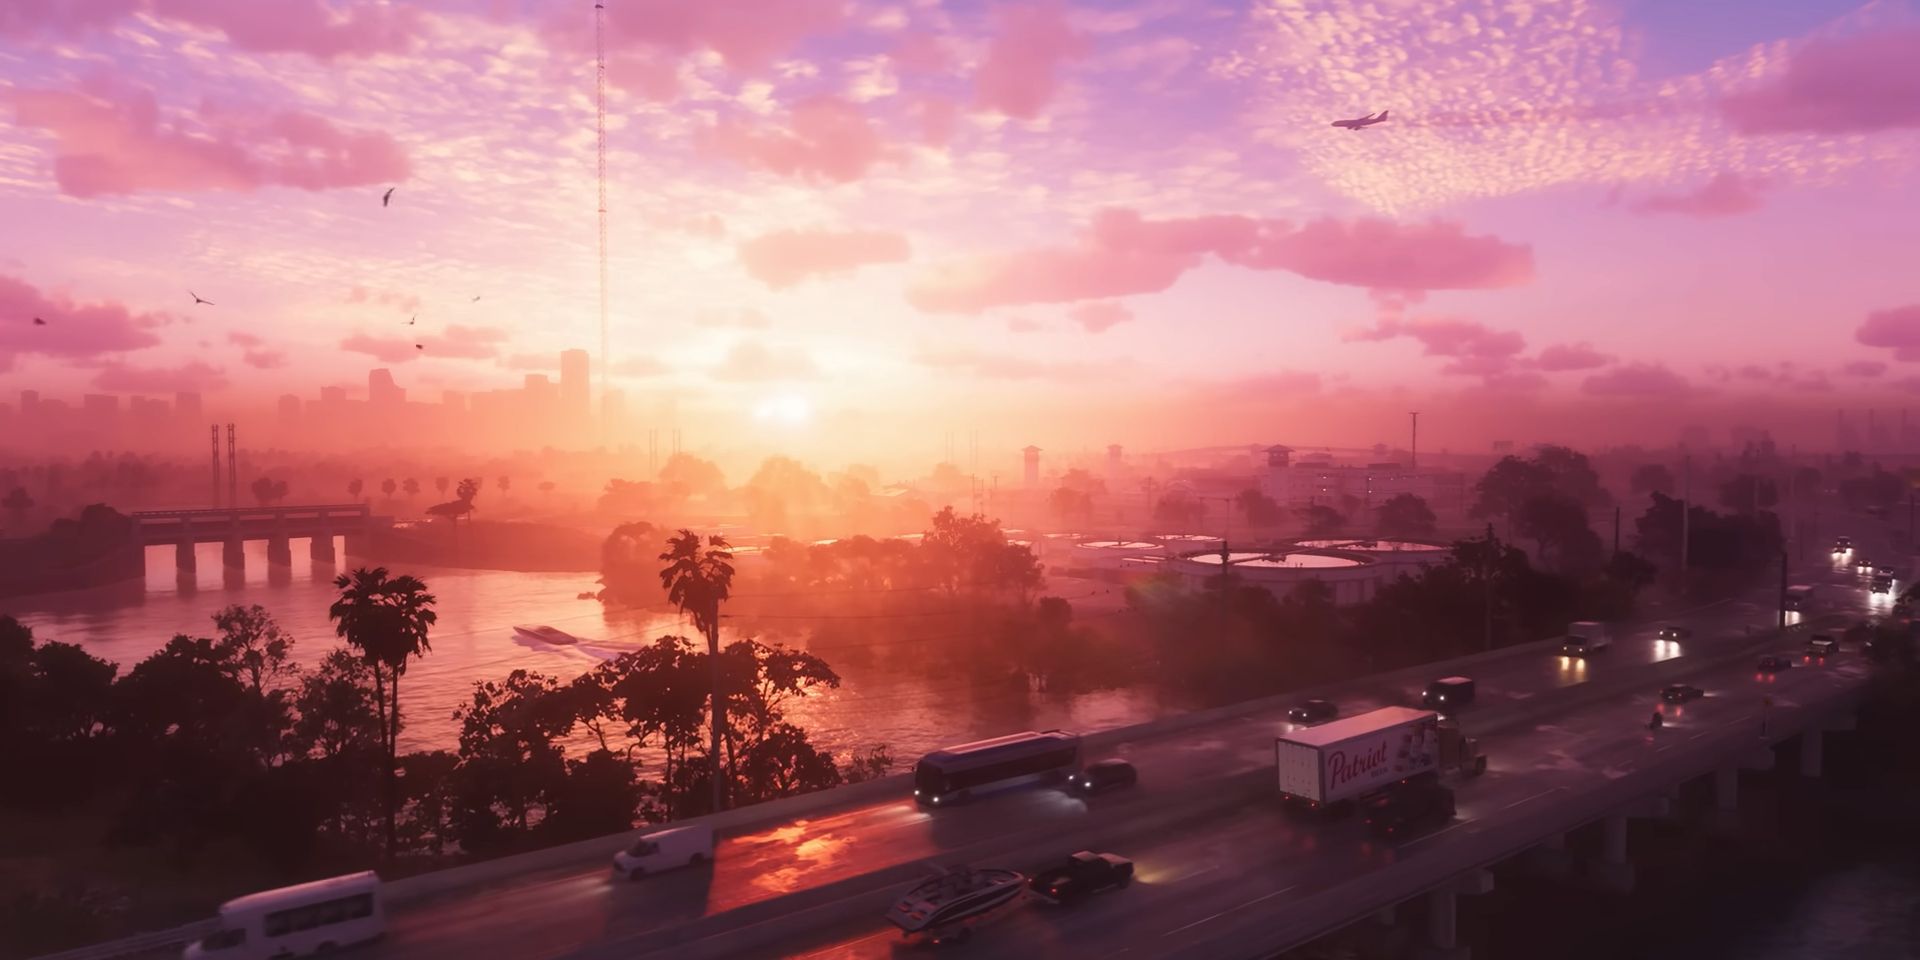 Una vista aérea de Vice City en una captura de pantalla del tráiler de GTA 6.  Una puesta de sol baña todo con una luz púrpura y dorada mientras autos y camiones retumban por una autopista bordeada de palmeras a lo largo de una bahía.  A lo lejos, algunos hoteles se alzan contra el horizonte mientras un avión vuela justo debajo de unas nubes irregulares.